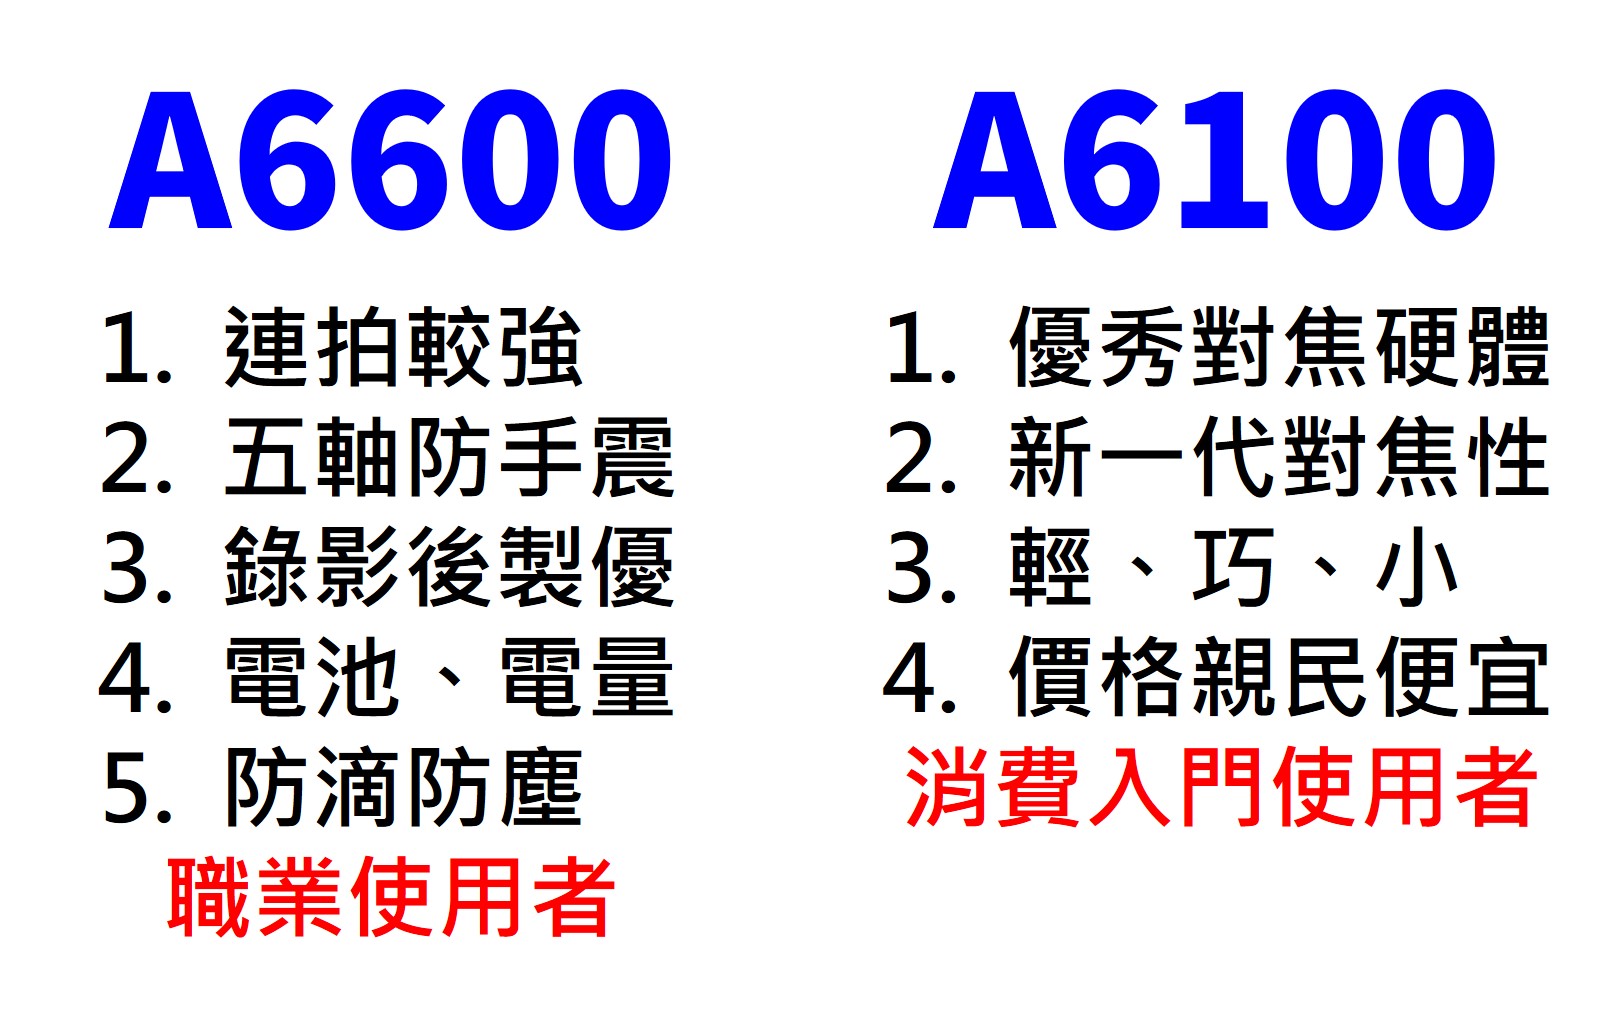 A6600 A6100 購買比較